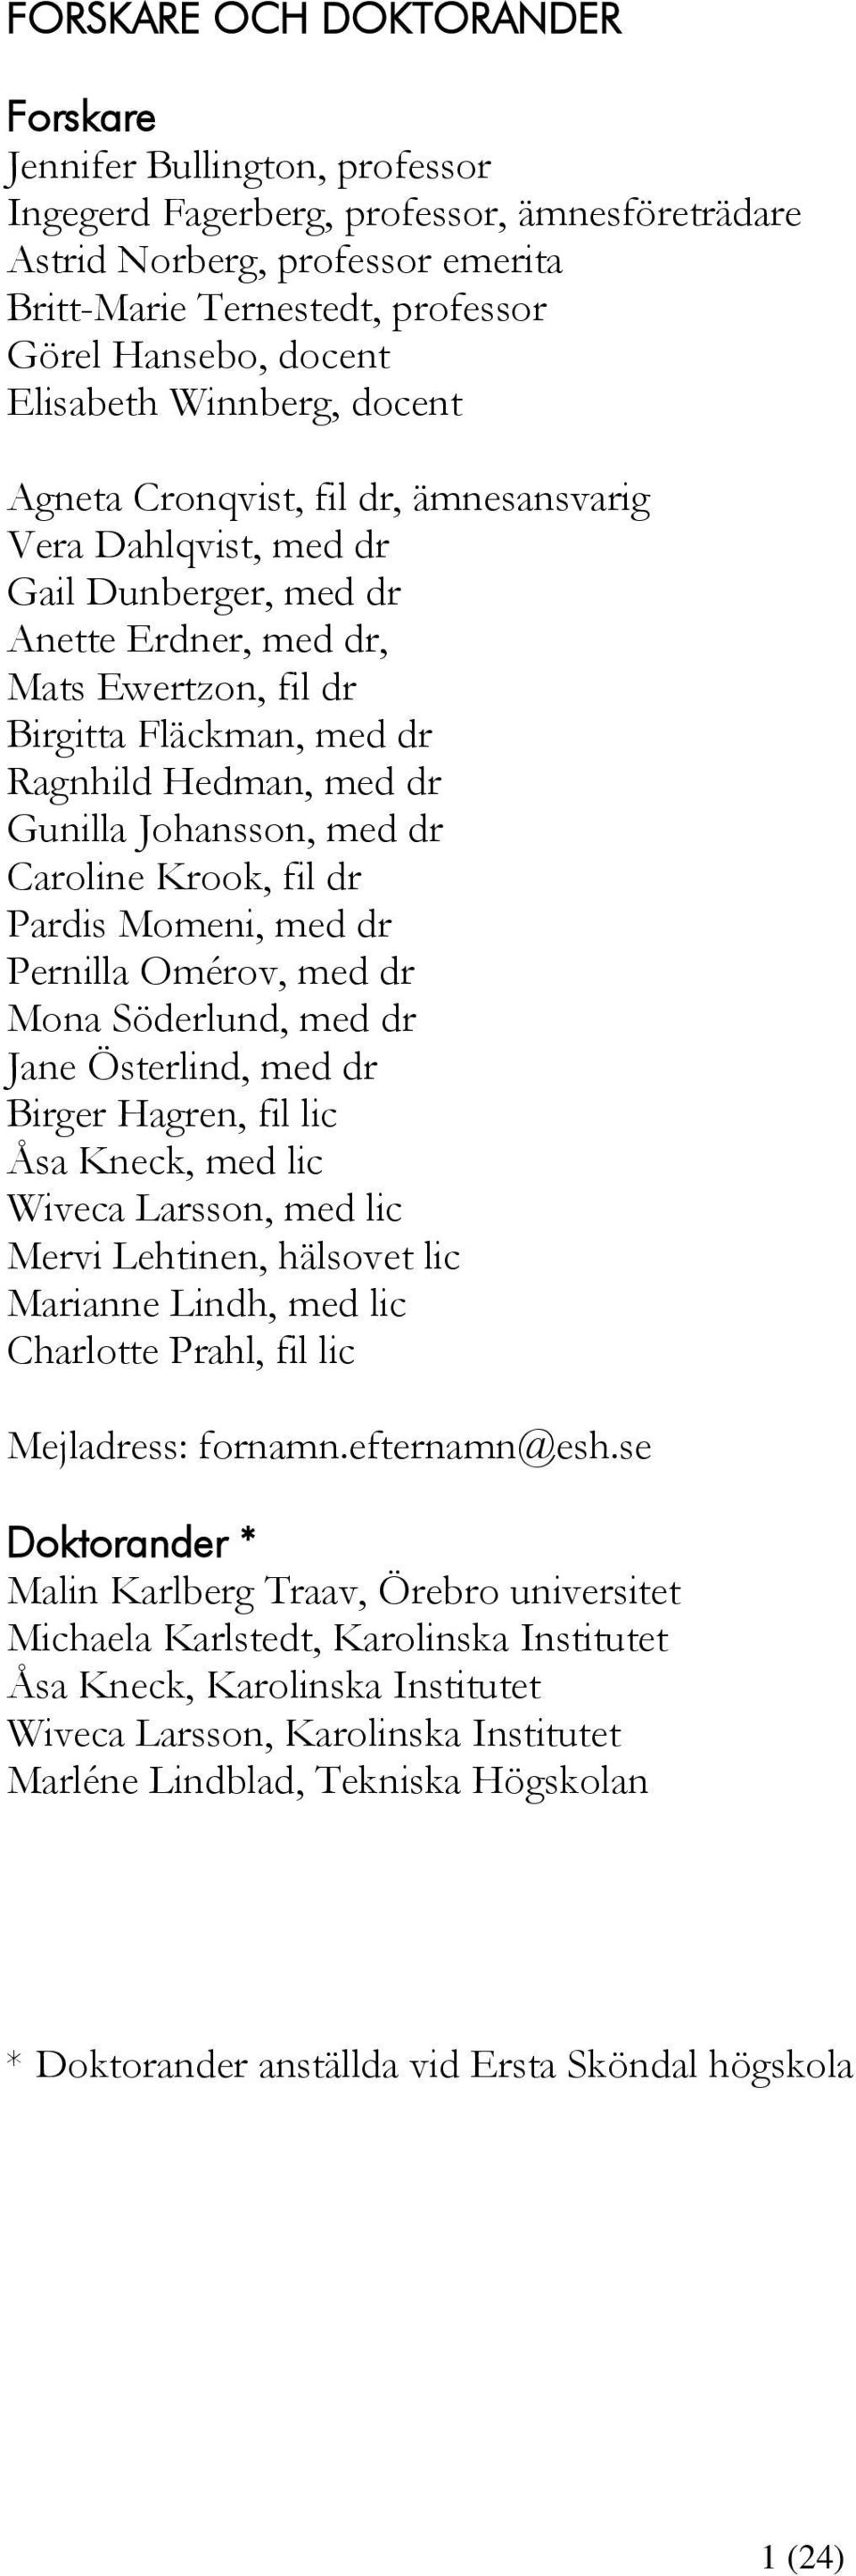 Hedman, med dr Gunilla Johansson, med dr Caroline Krook, fil dr Pardis Momeni, med dr Pernilla Omérov, med dr Mona Söderlund, med dr Jane Österlind, med dr Birger Hagren, fil lic Åsa Kneck, med lic